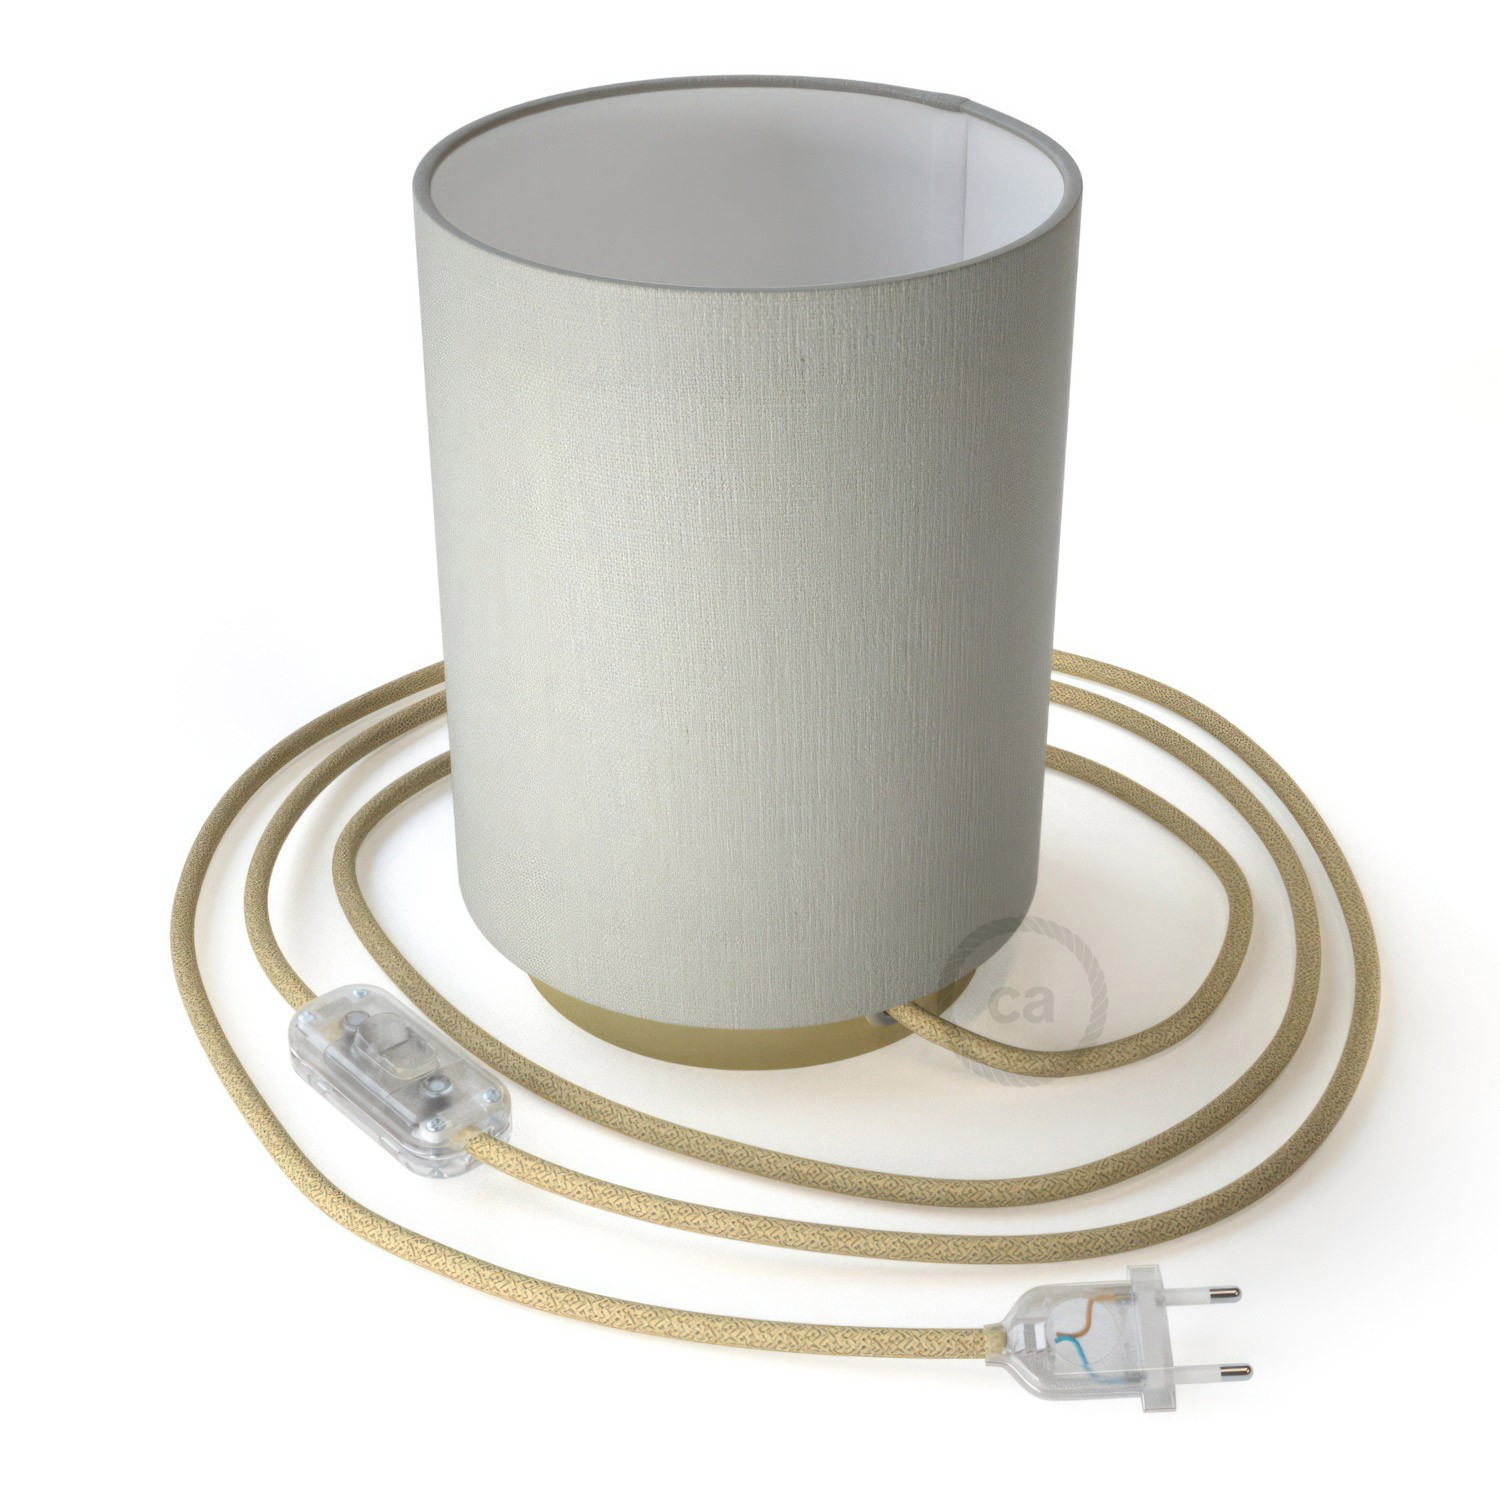 Posaluce aus Metall mit Lampenschirm Cilindro Linone Weiß, komplett mit Textilkabel, Schalter und 2-poligem Stecker